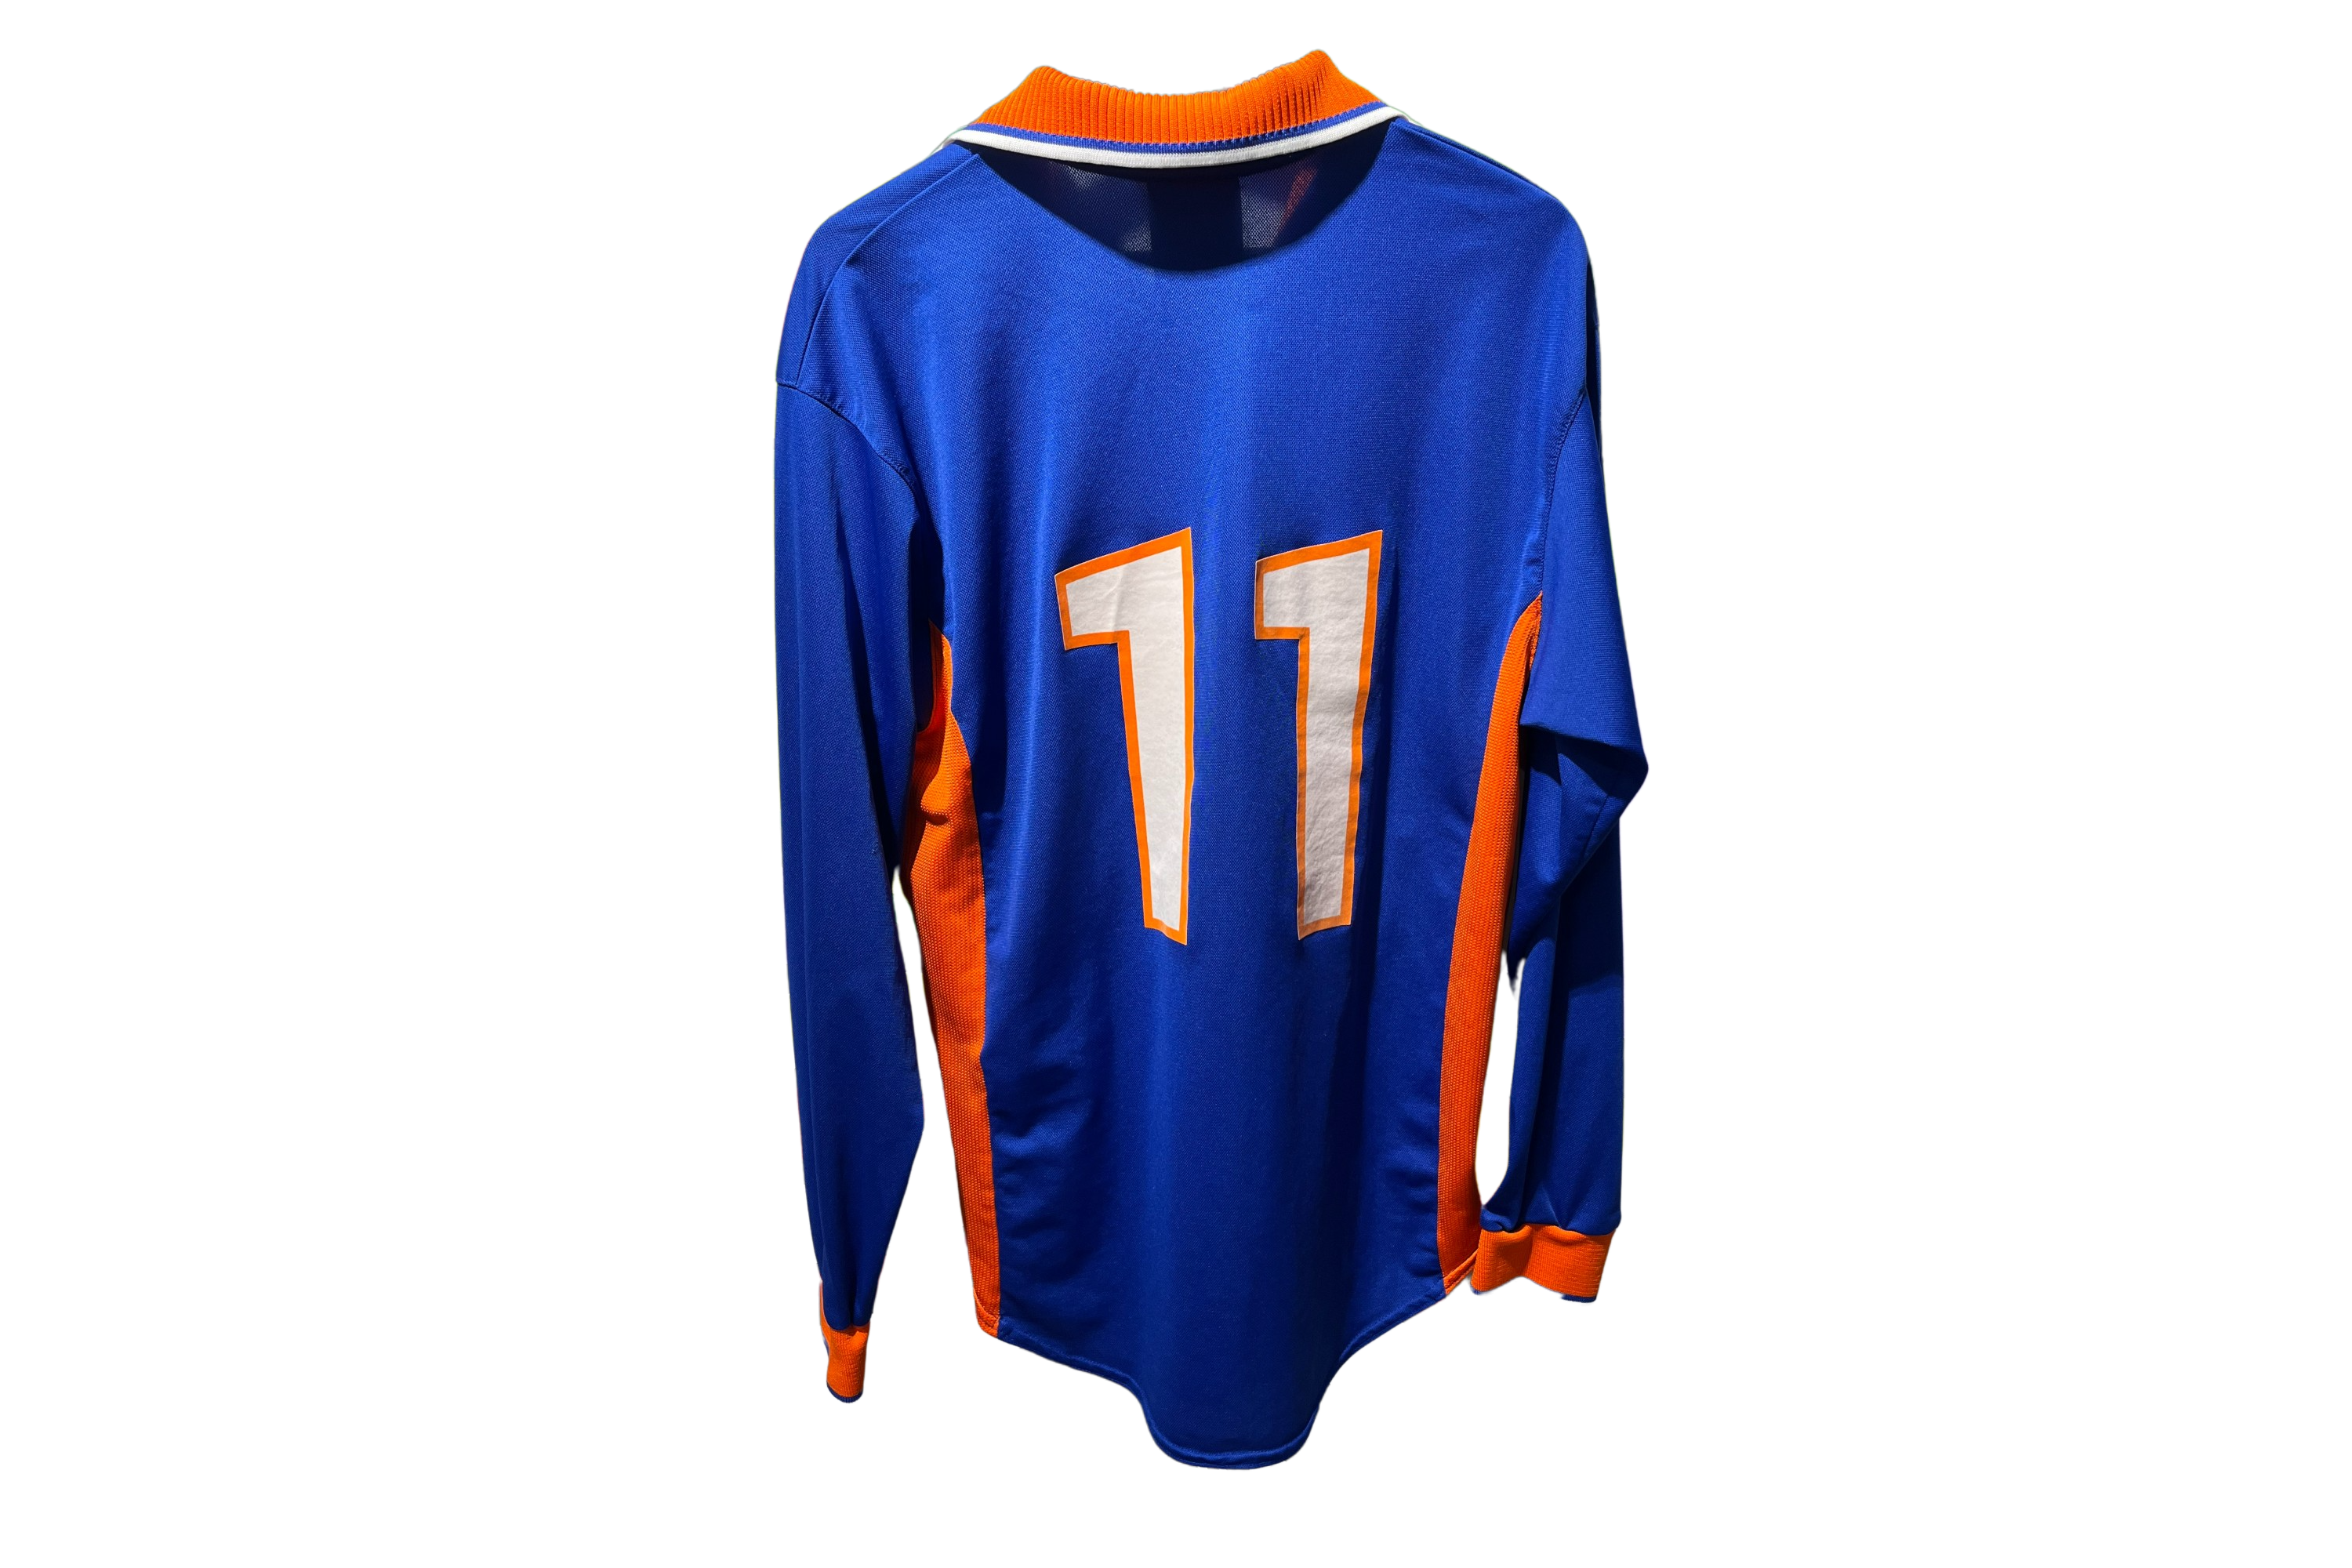 Nike - Netherlands 1997 Away Football Shirt '11'